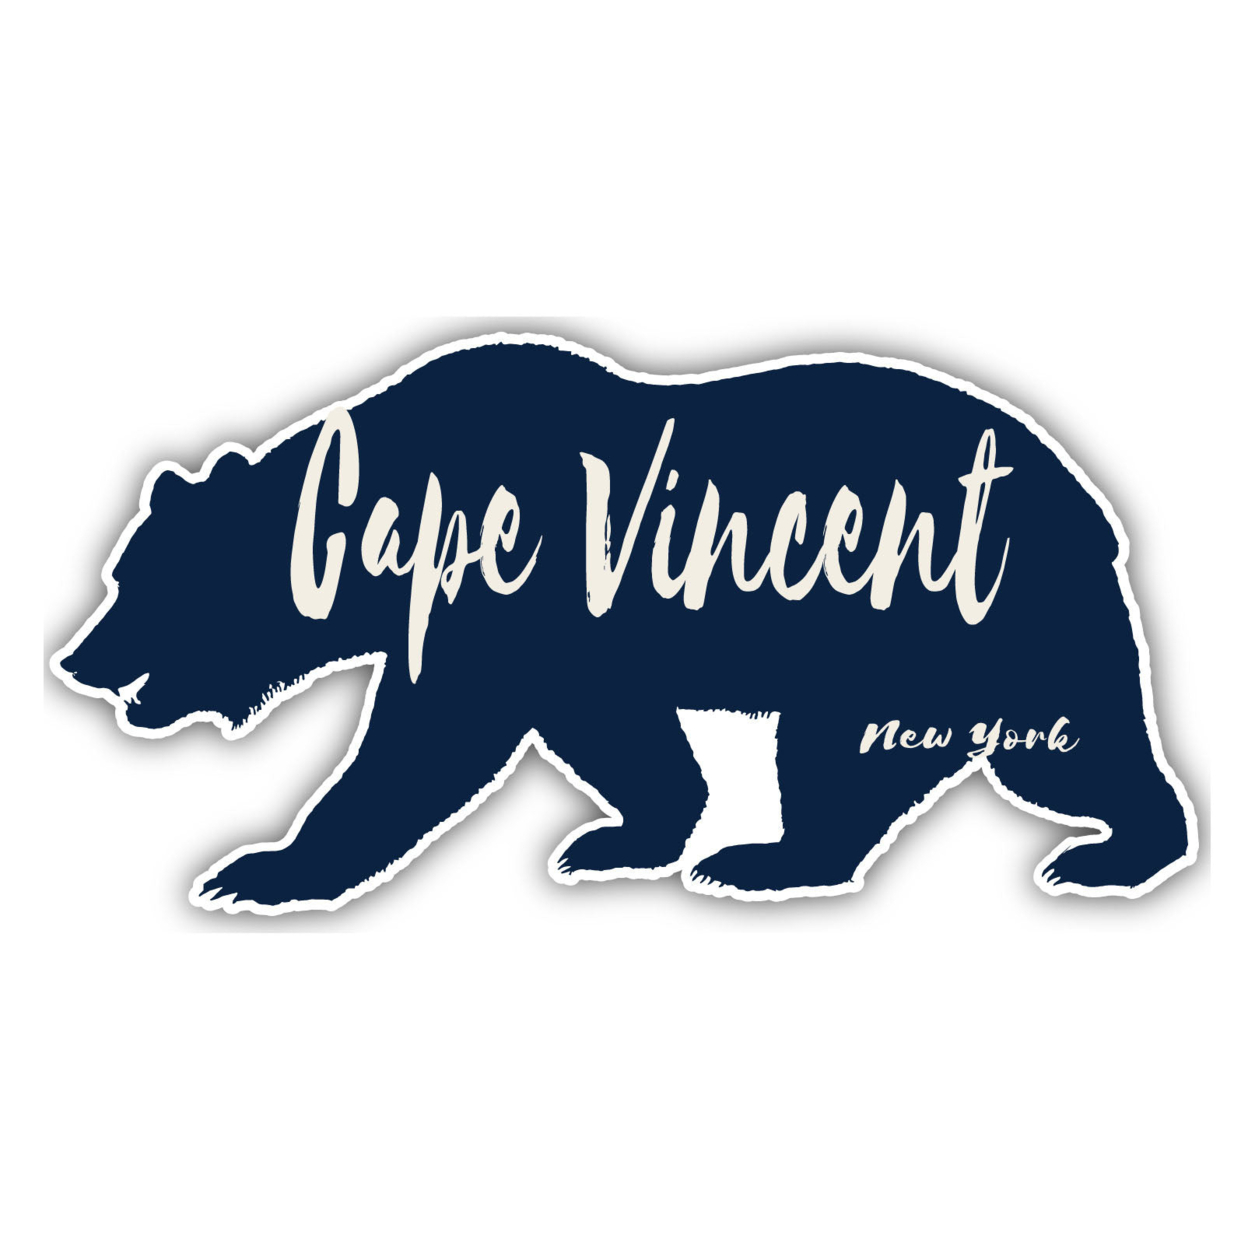 Cape Vincent New York Souvenir Decorative Stickers (Choose Theme And Size) - Single Unit, 2-Inch, Bear